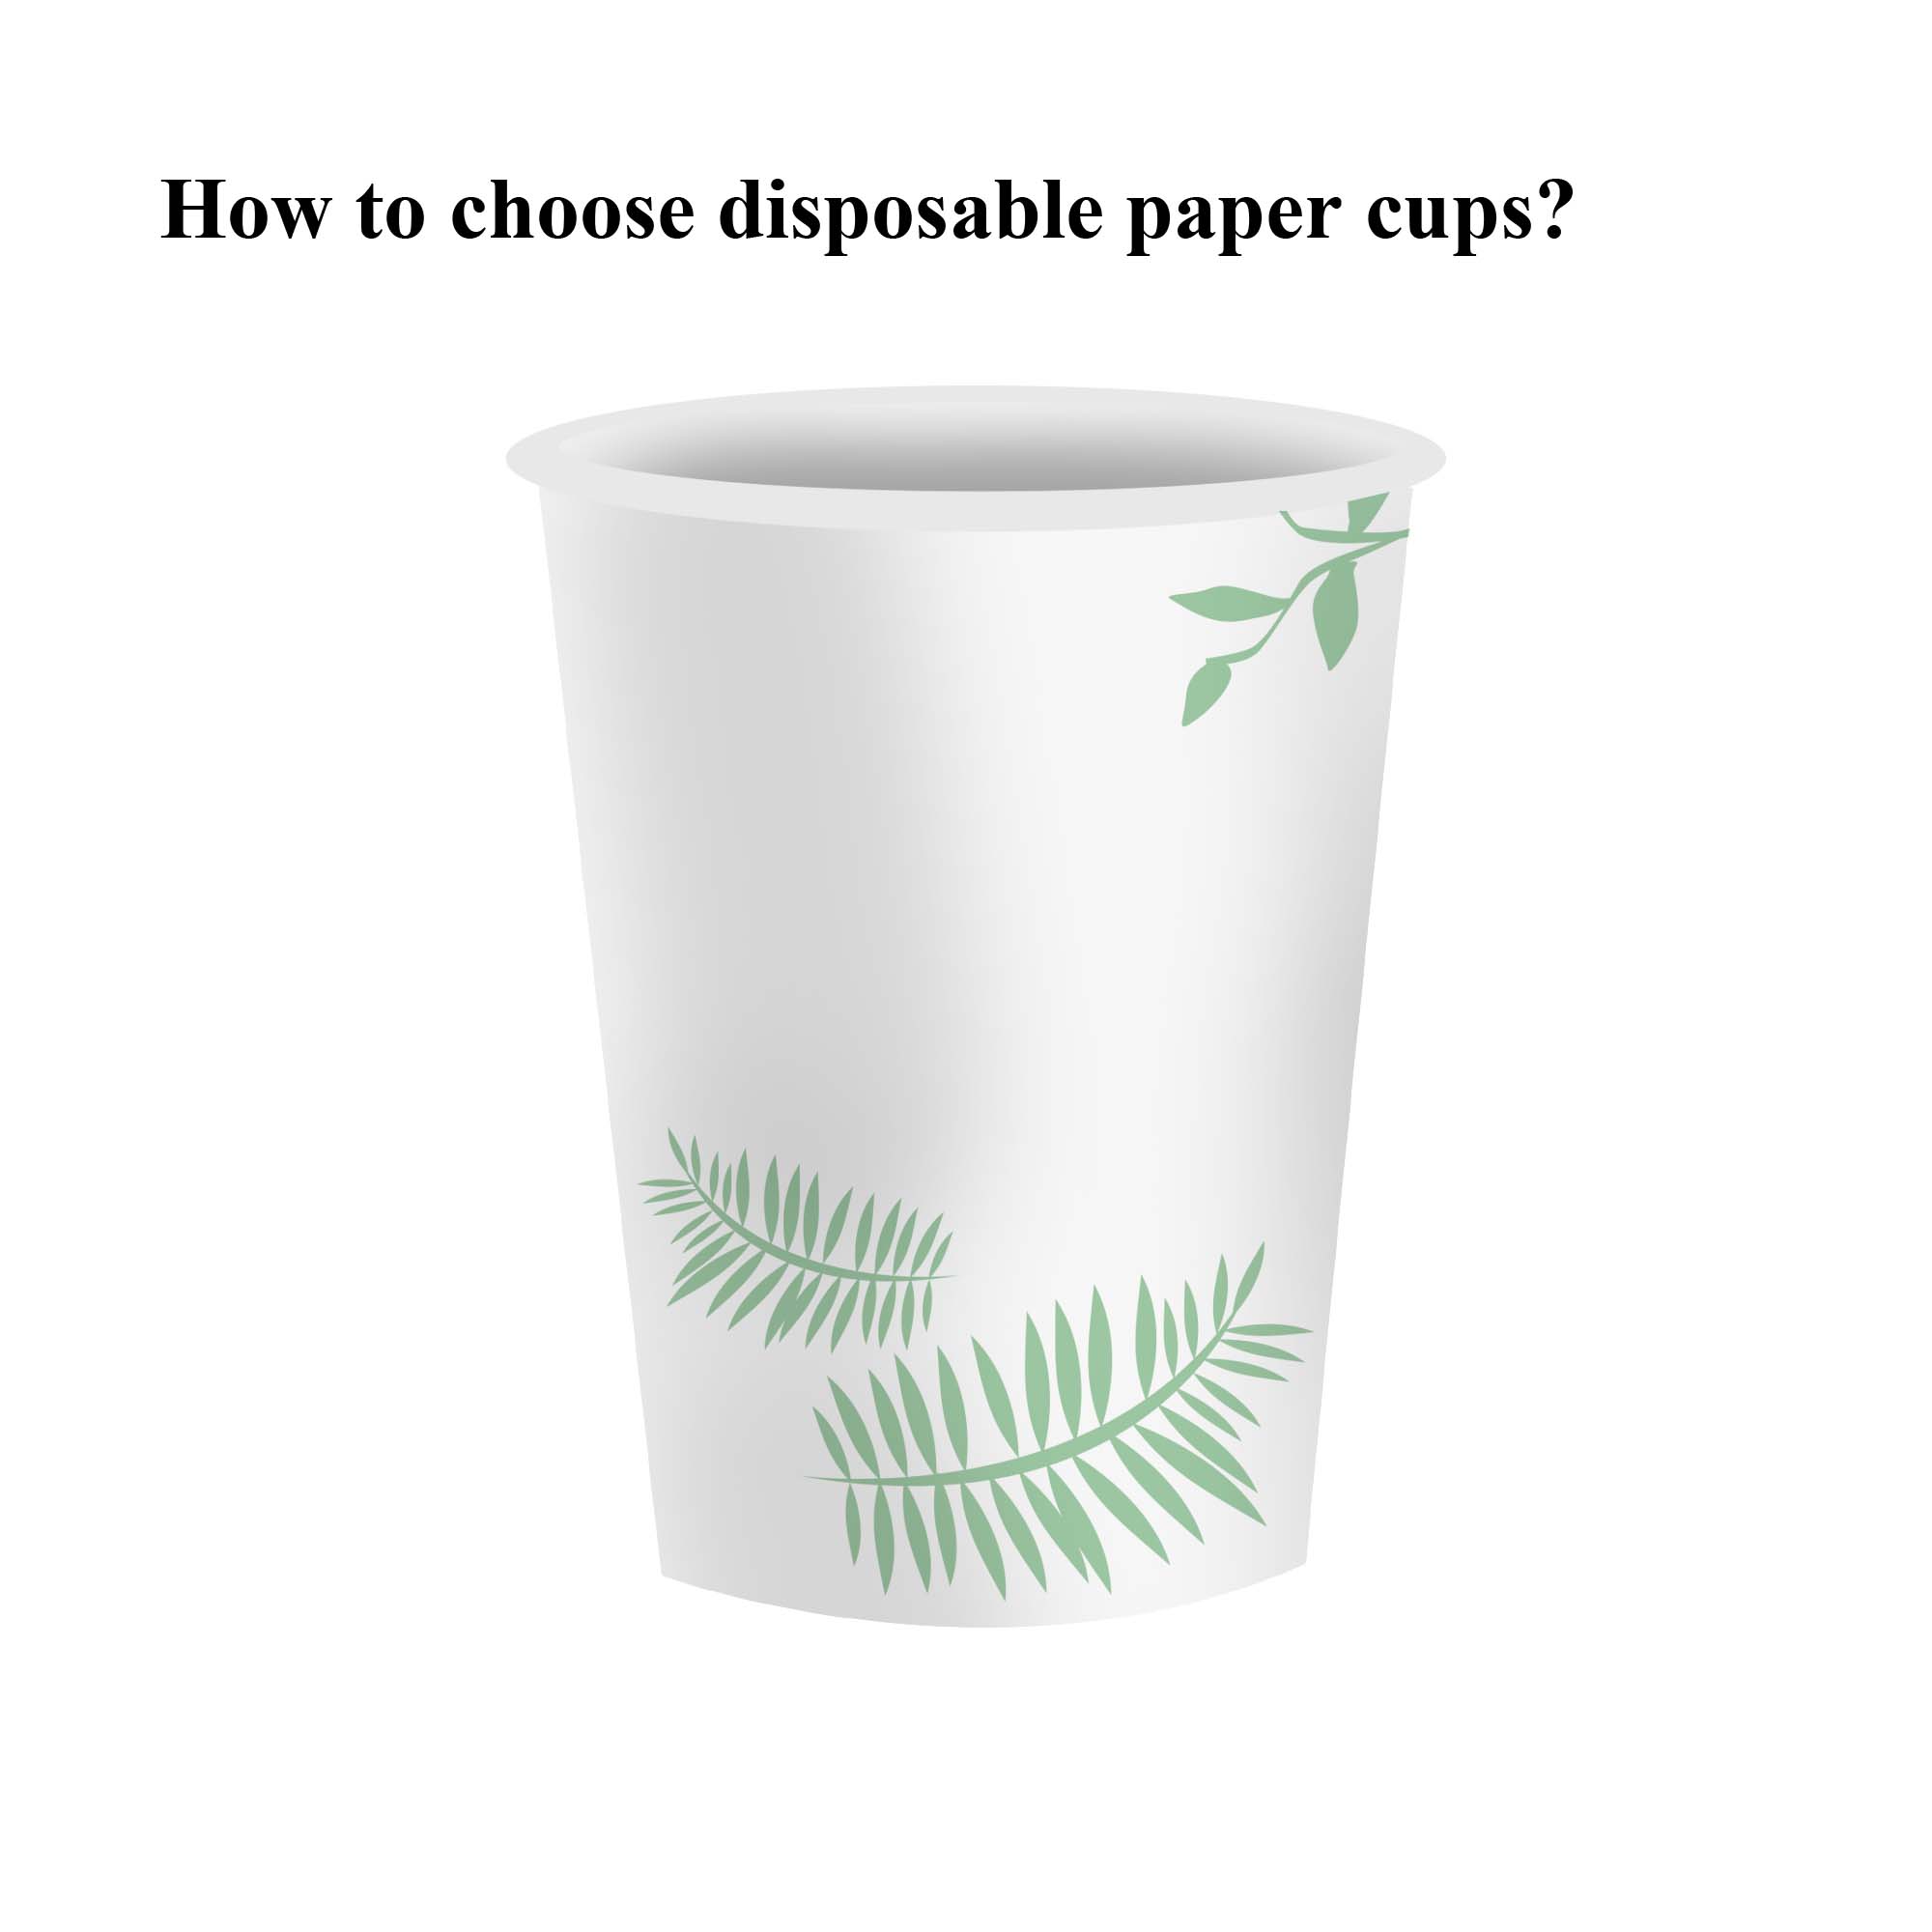 일회용 종이컵을 선택하는 방법은 무엇입니까?